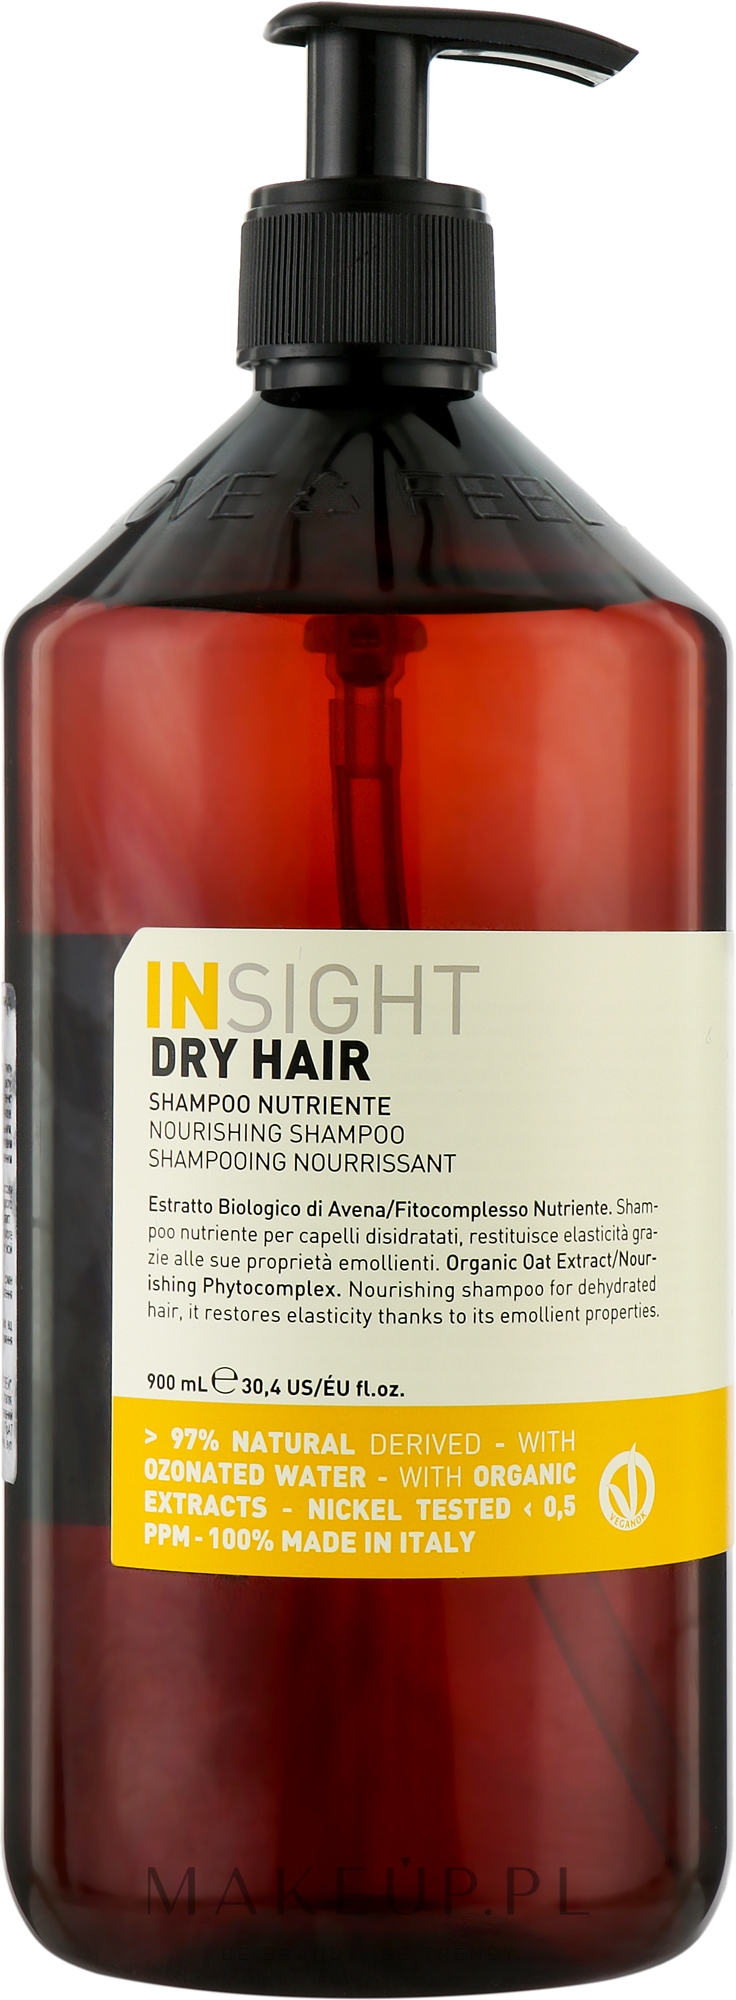 insight szampon do włosów suchych wizaż